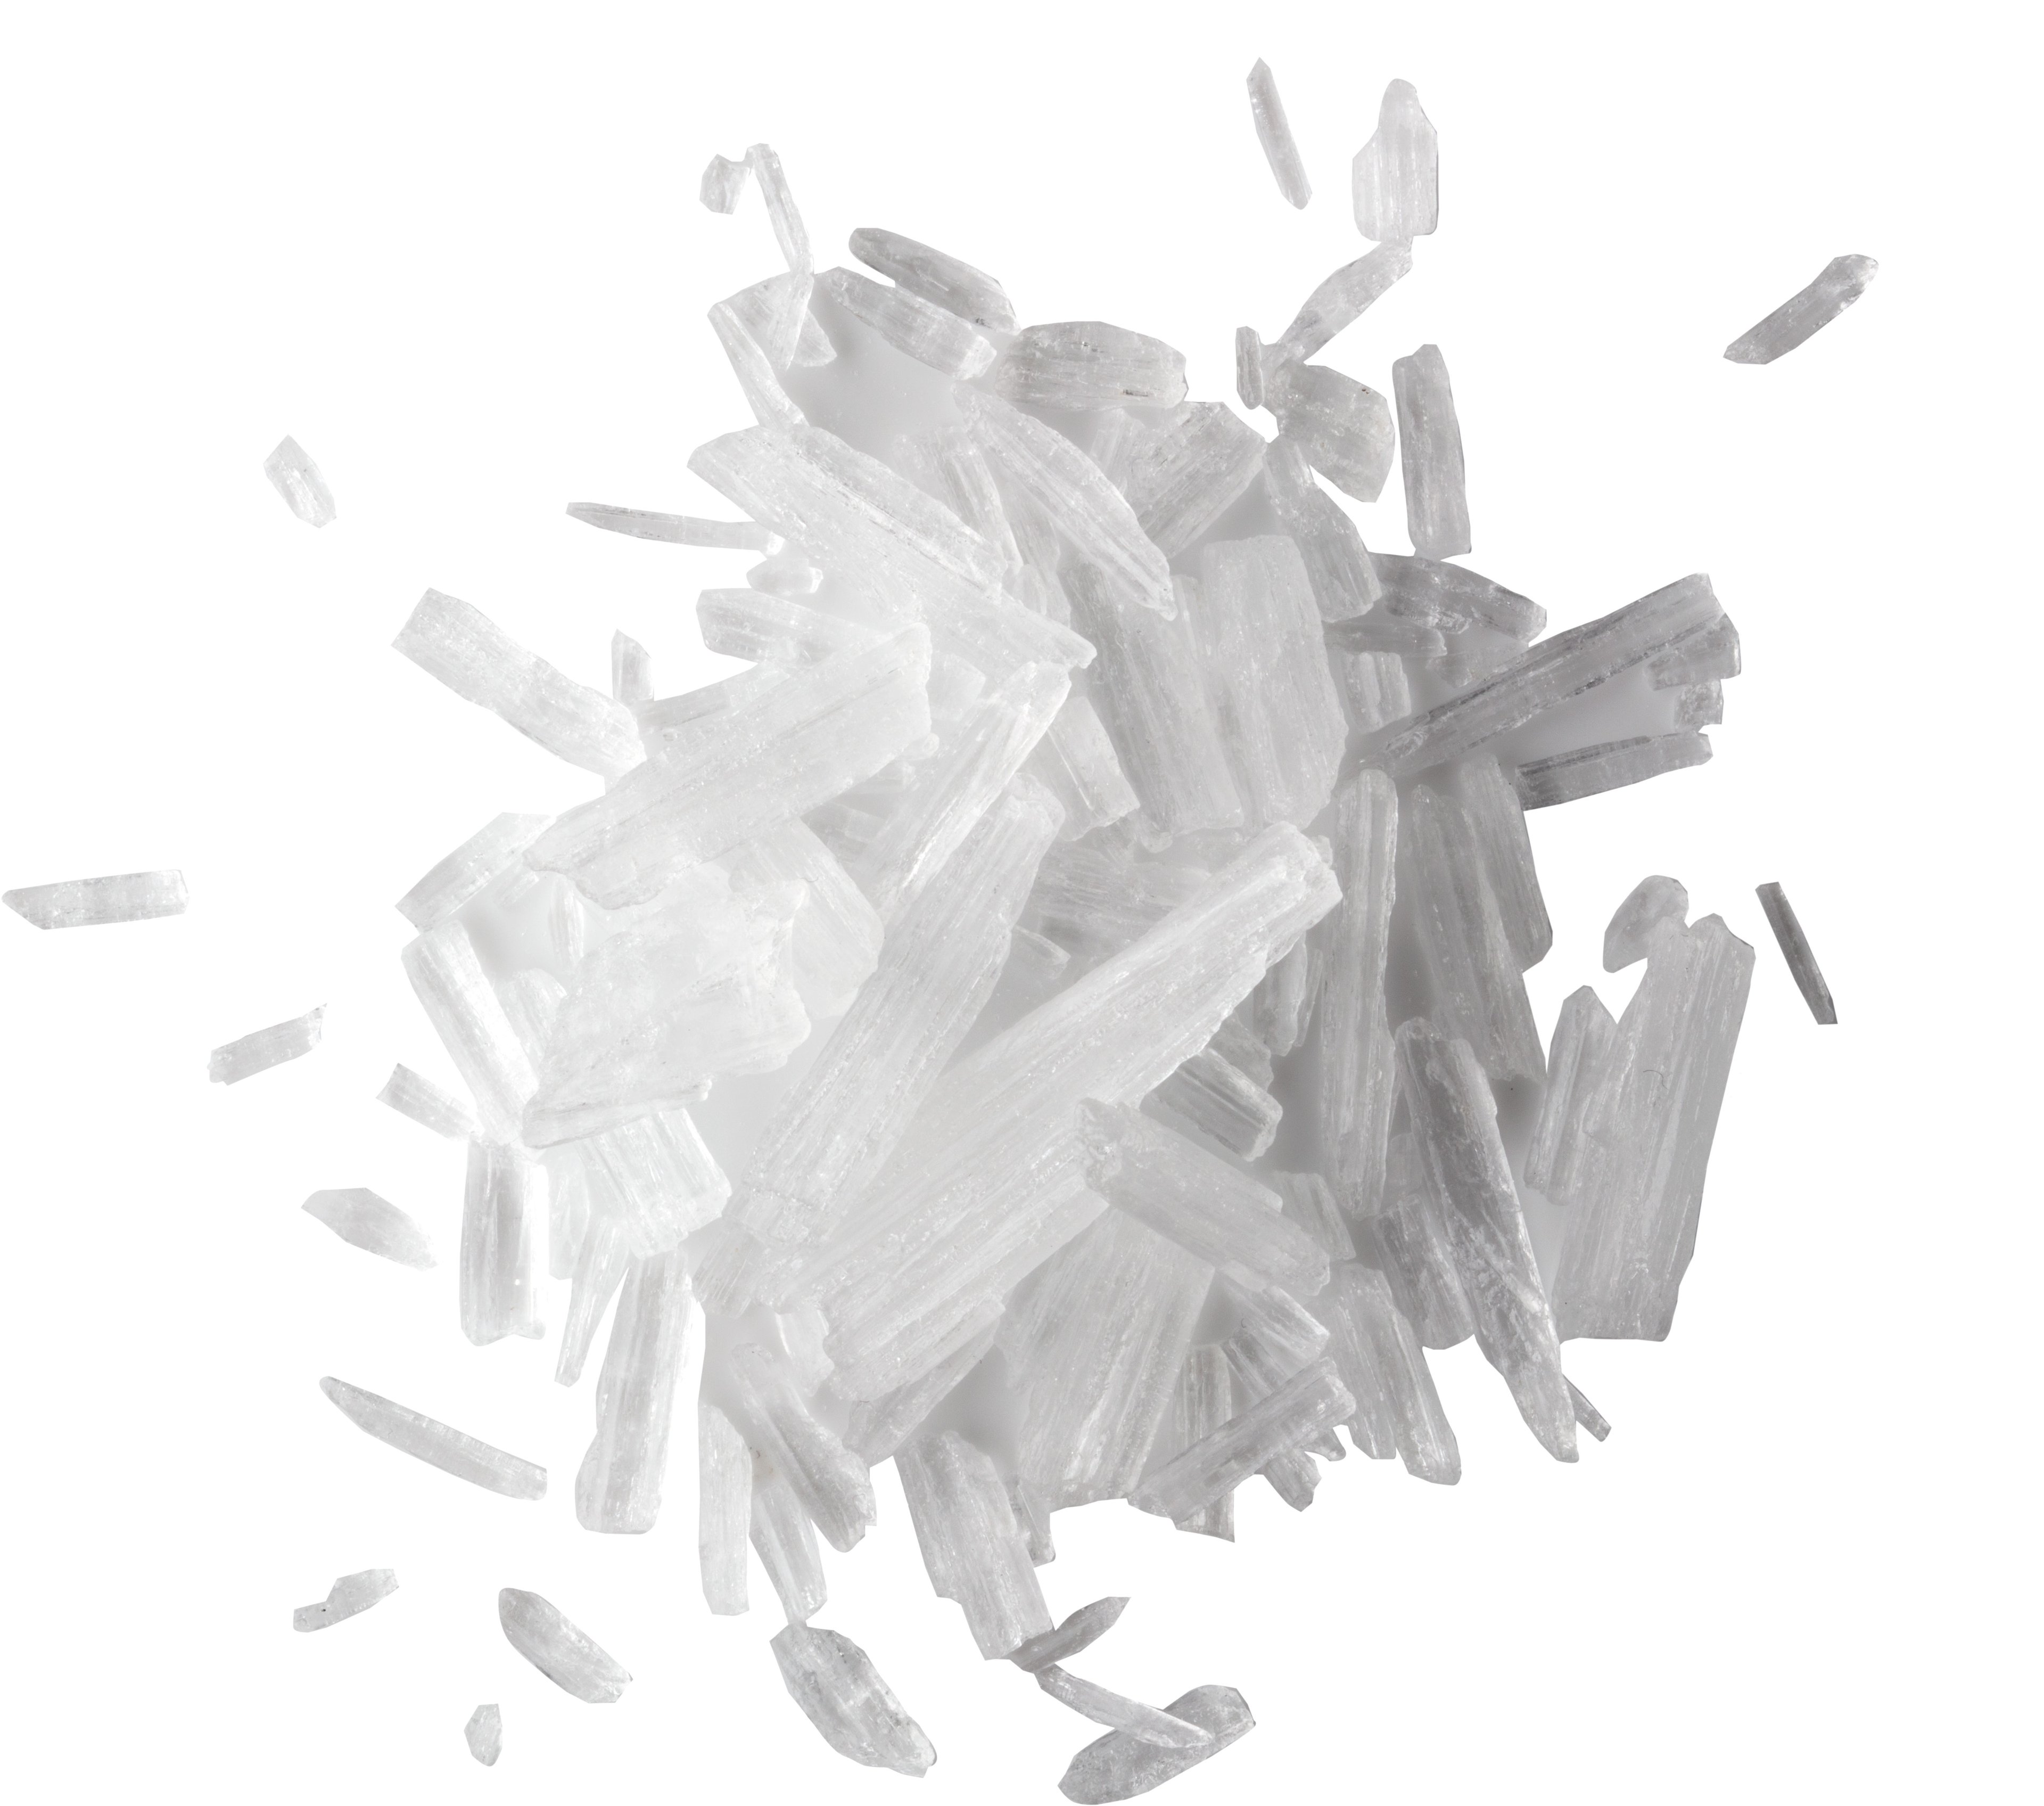 Cristaux de menthol (Menthol crystals)